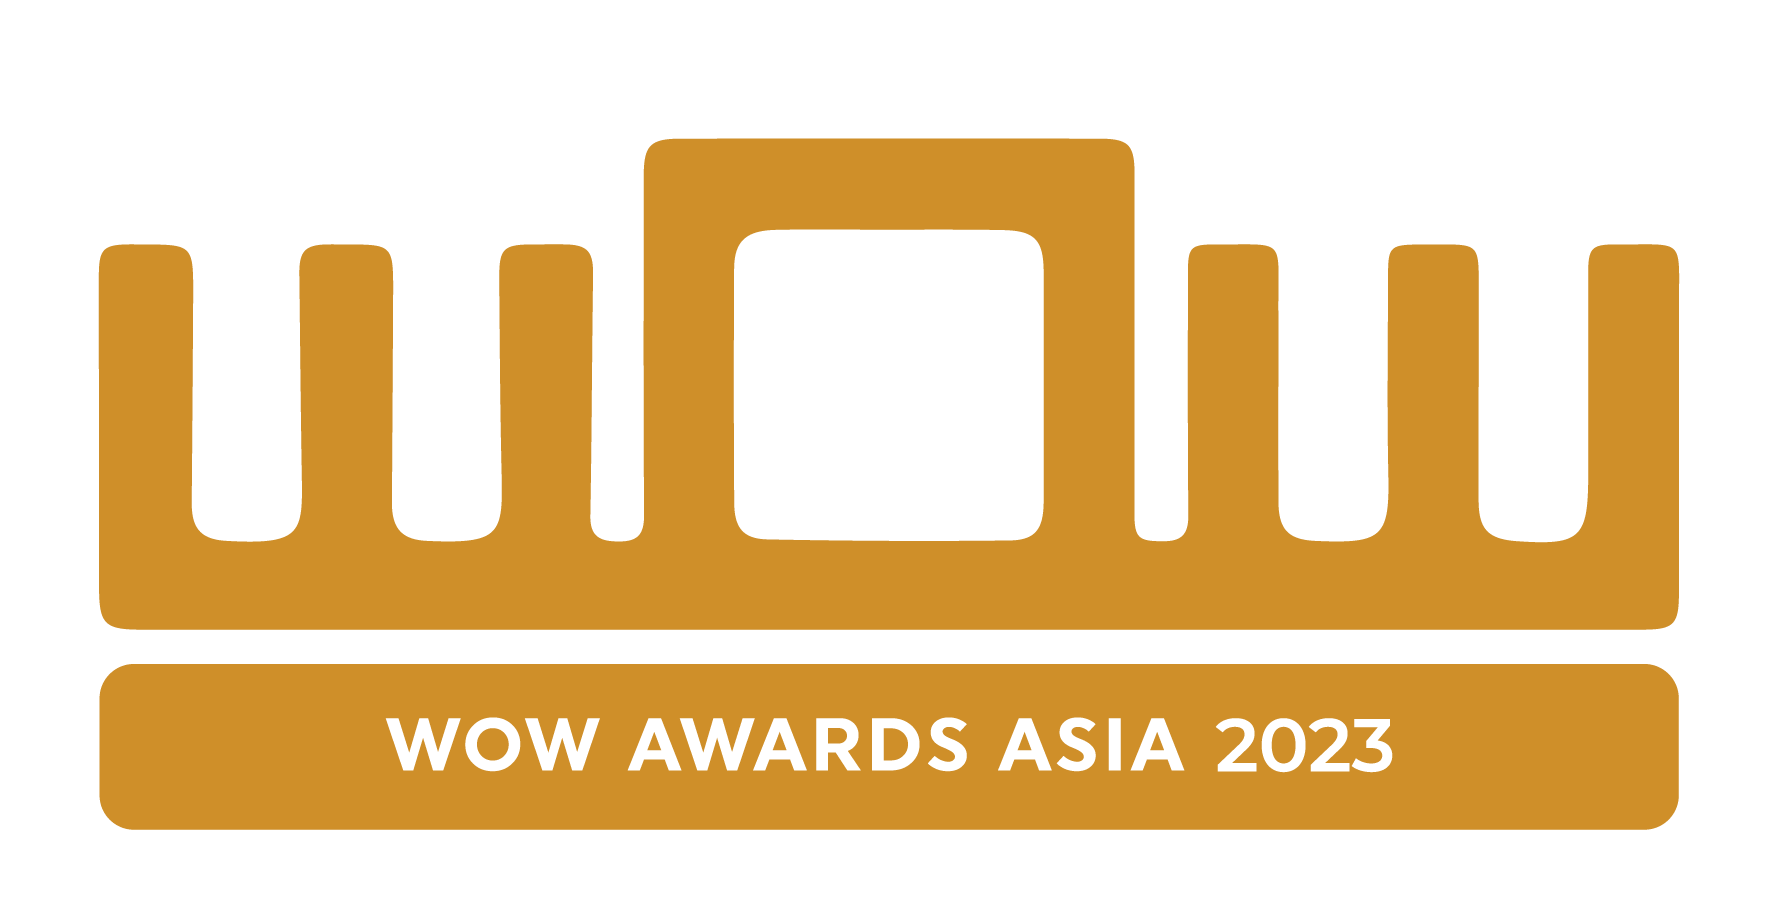 WOW AWARDS ASIA 2023